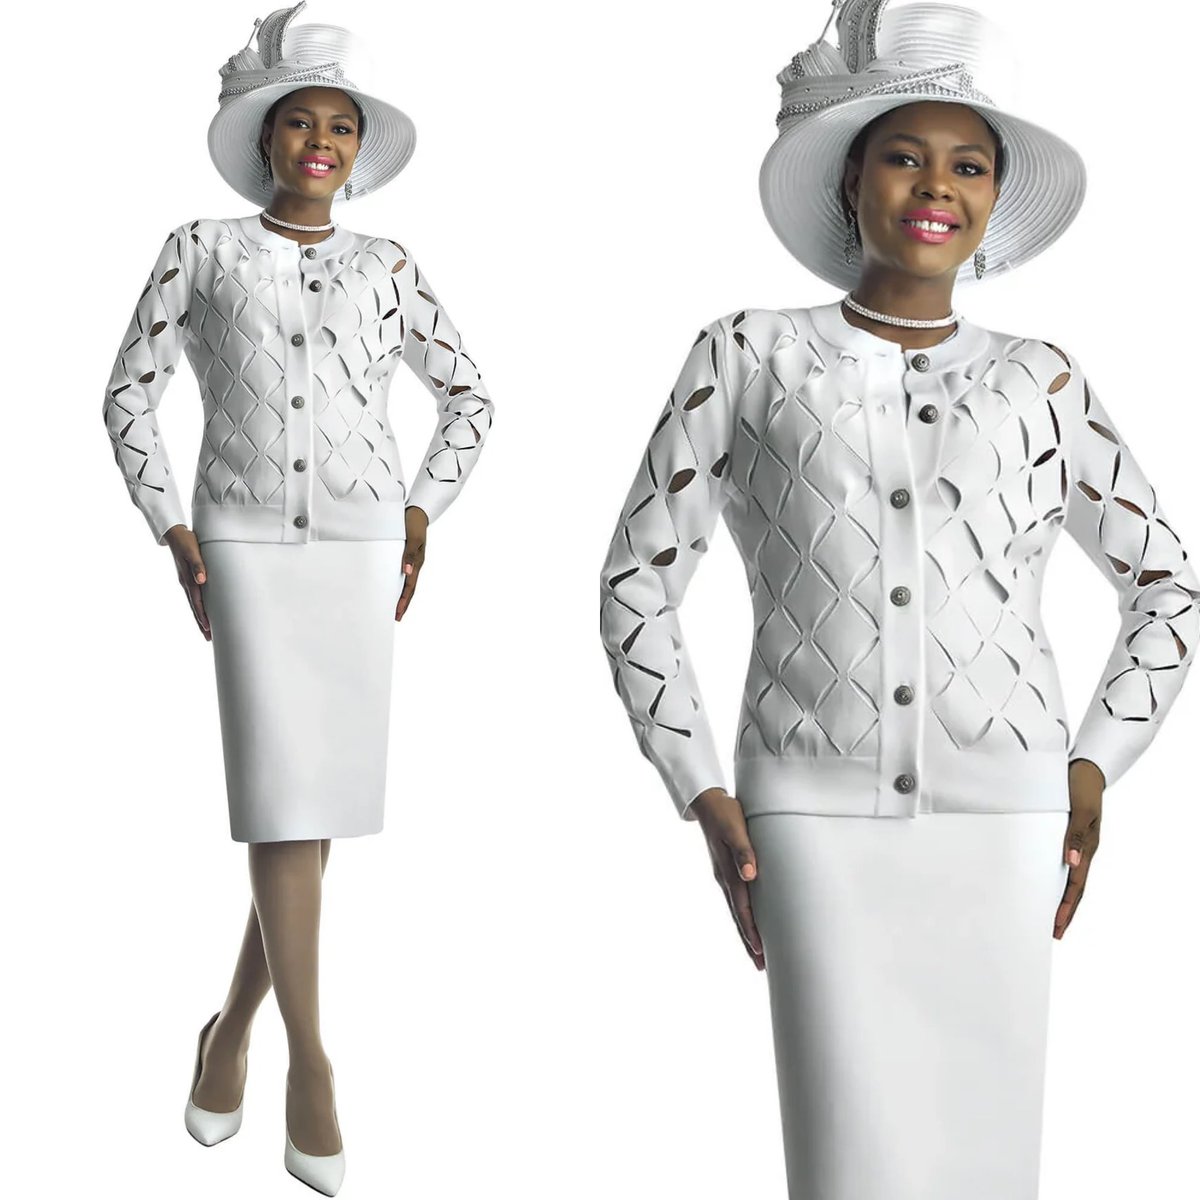 Lily & Taylor 800 White Knit Skirt Suit 
divasdenfashion.com/products/lily-… 
#DivasDenFashion #LilyandTaylor #whiteskirtsuit #couturefashion #Cogic #redskirtsuit #blackskirtsuit #cutout #curvygirlsrock #funeralfashion #weddingfashion #knitskirtsuit #cogicfashions #luxefashion #petitefashion